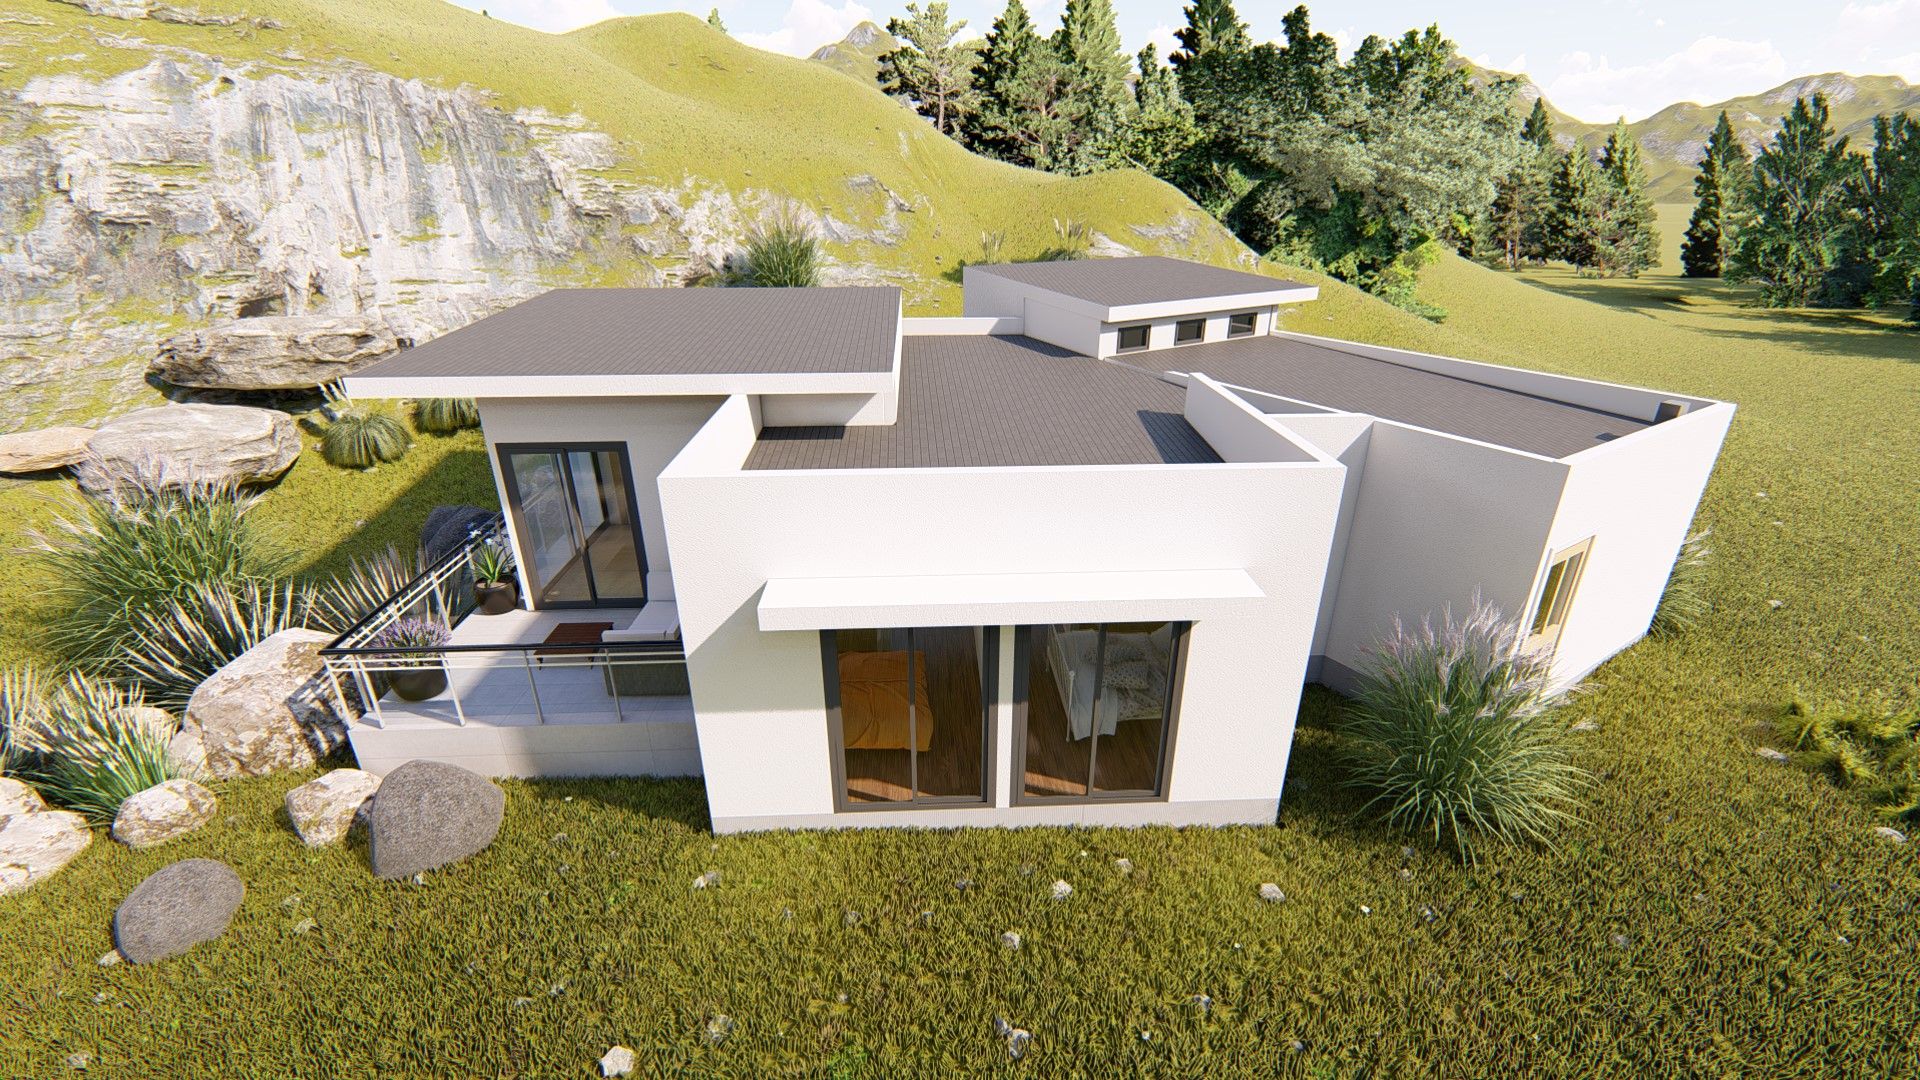 Diseño vivienda en ladera con desniveles 104m2 en Peñuelas , Ekeko Arquitectura Ekeko Arquitectura Single family home